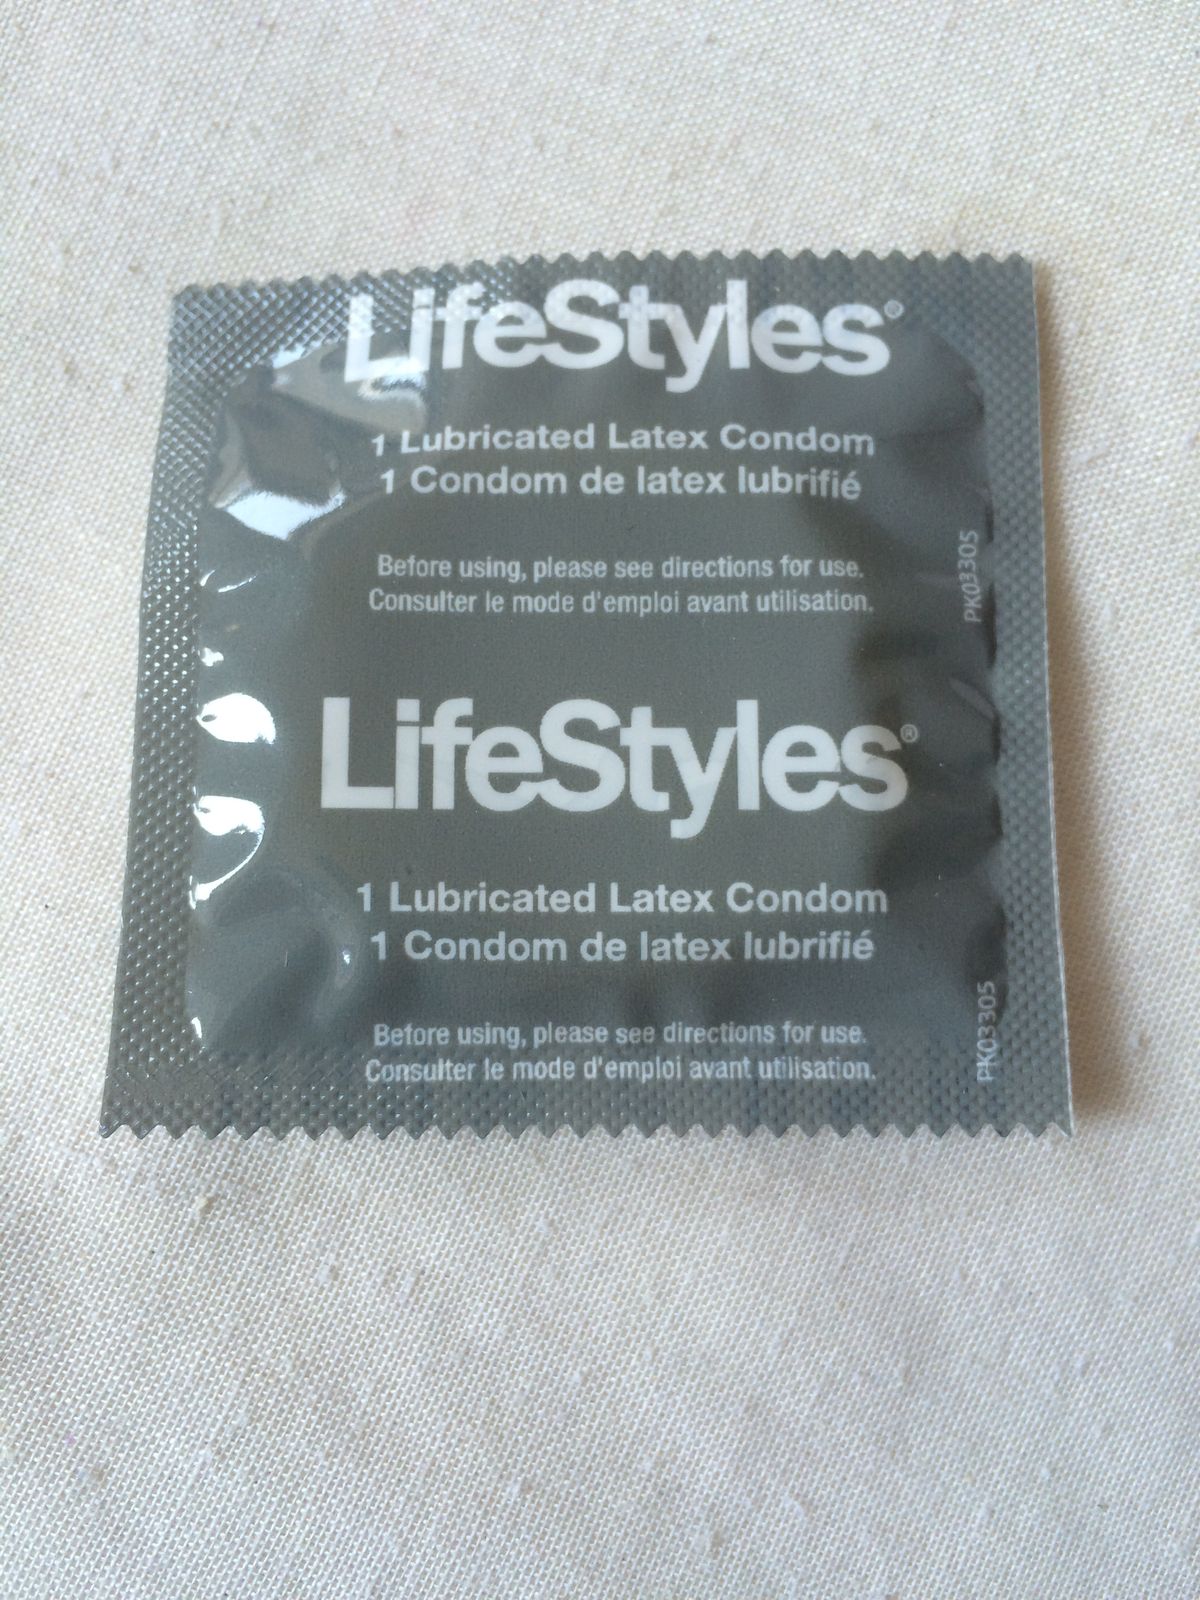 Ho provato 7 preservativi ed ecco come si accumulano